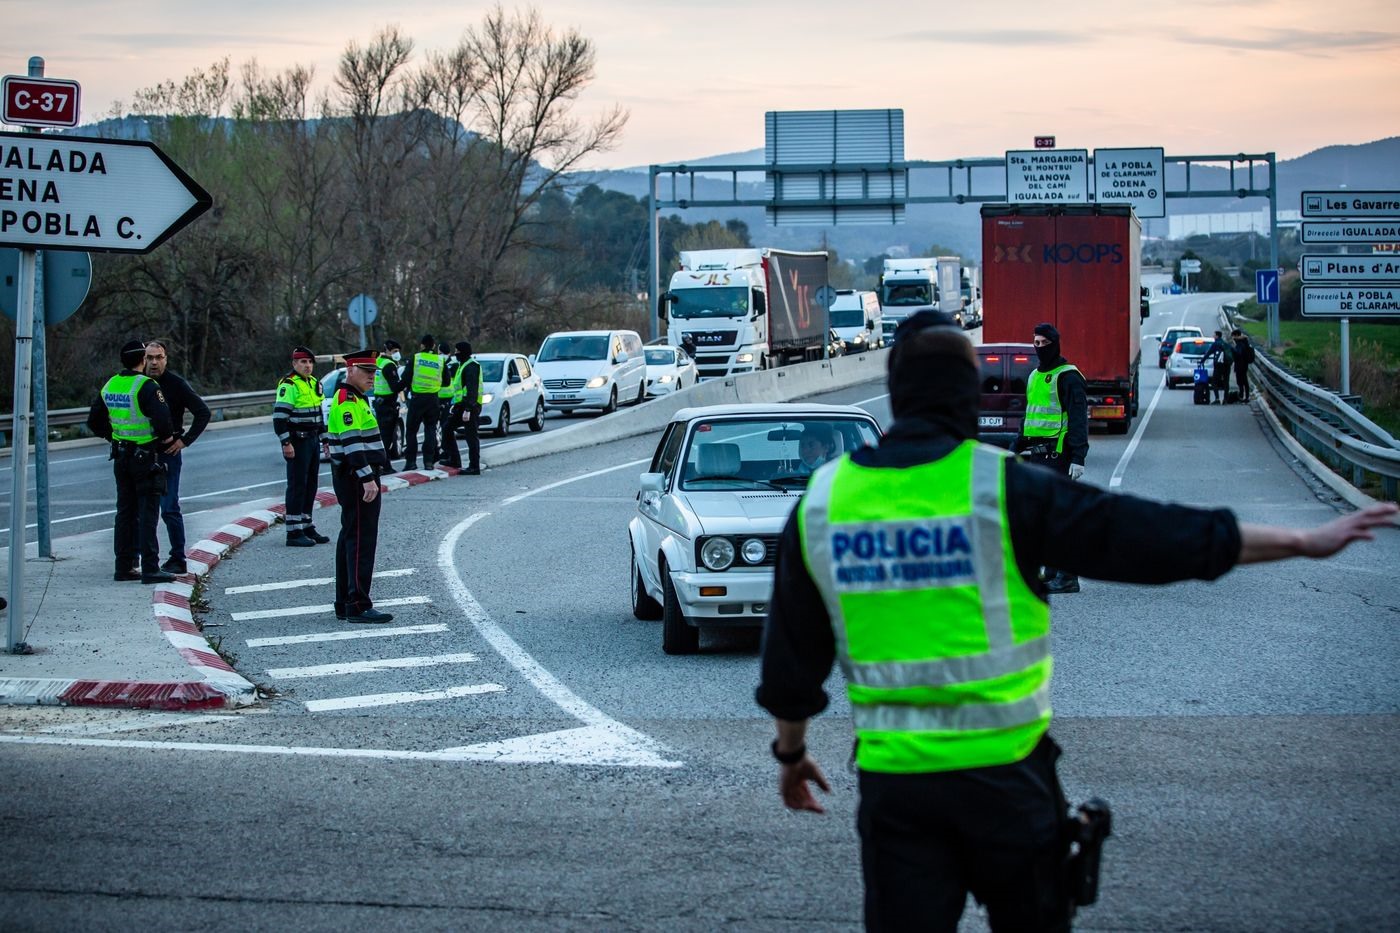 Lực lượng cảnh sát Mossos d'Esquadra giám sát việc đi lại của tài xế ở Barcelona (Tây Ban Nha). Theo đó, để dễ dàng kiểm soát lệnh chỉ đi lại khi khẩn cấp hoặc thiết yếu, cảnh sát buộc các tài xế trực tiếp điều khiển phương tiện giao thông. Ảnh: Bloomberg.